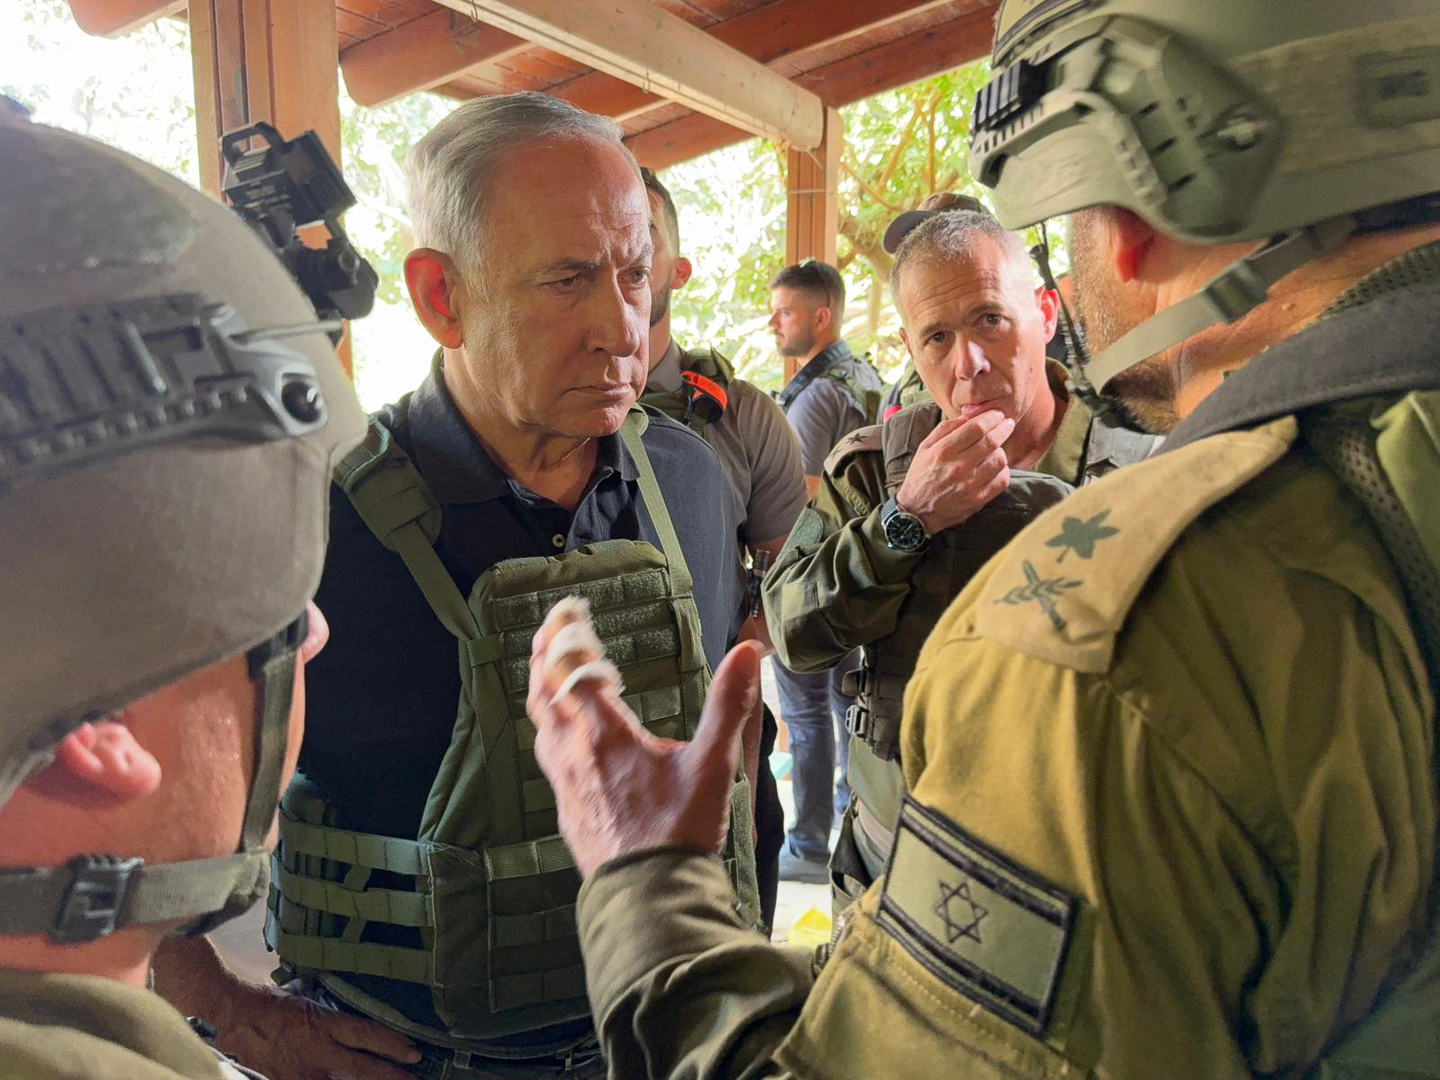 جندي إسرائيلي يهاجم نتنياهو في قاعدة عسكرية (فيديو)